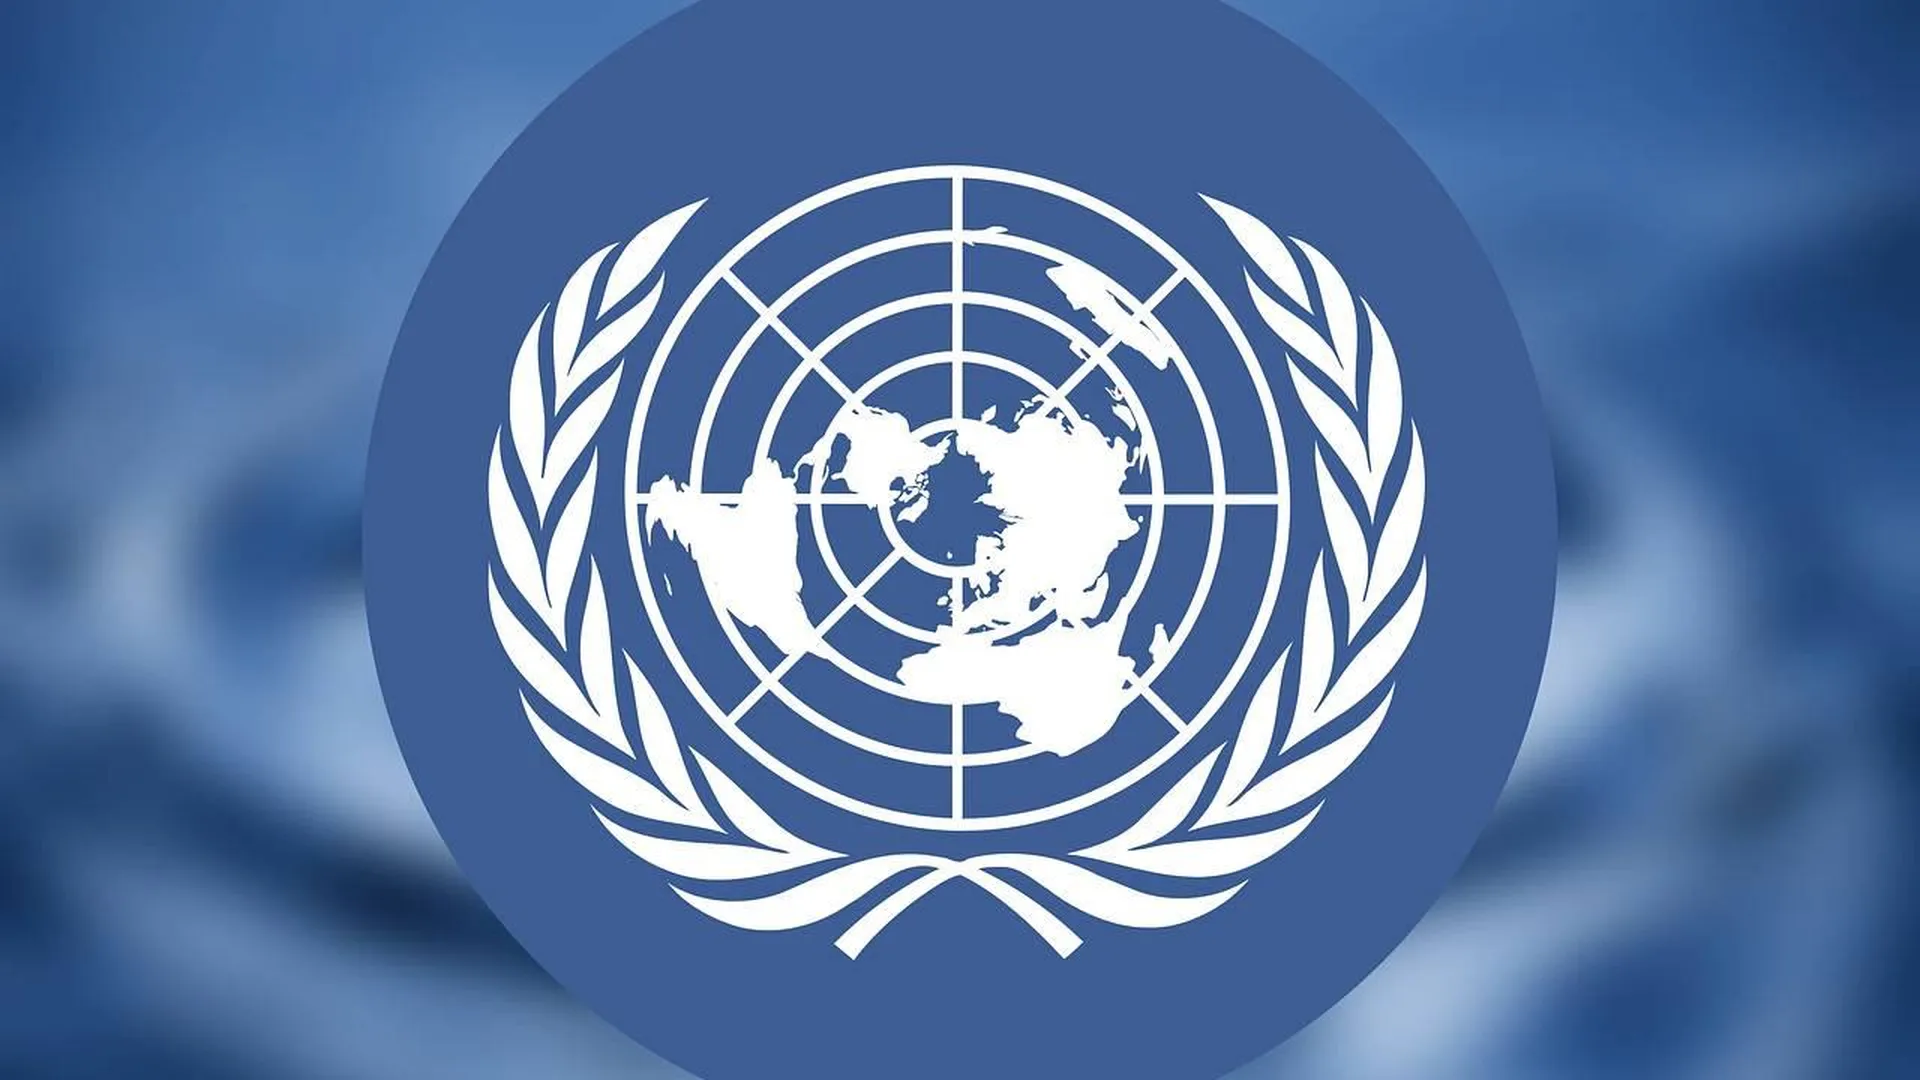 Тысячелетия оон. Организация Объединенных наций (ООН). Совет безопасности ООН эмблема. Генеральная Ассамблея ООН эмблема. Флаг ООН.